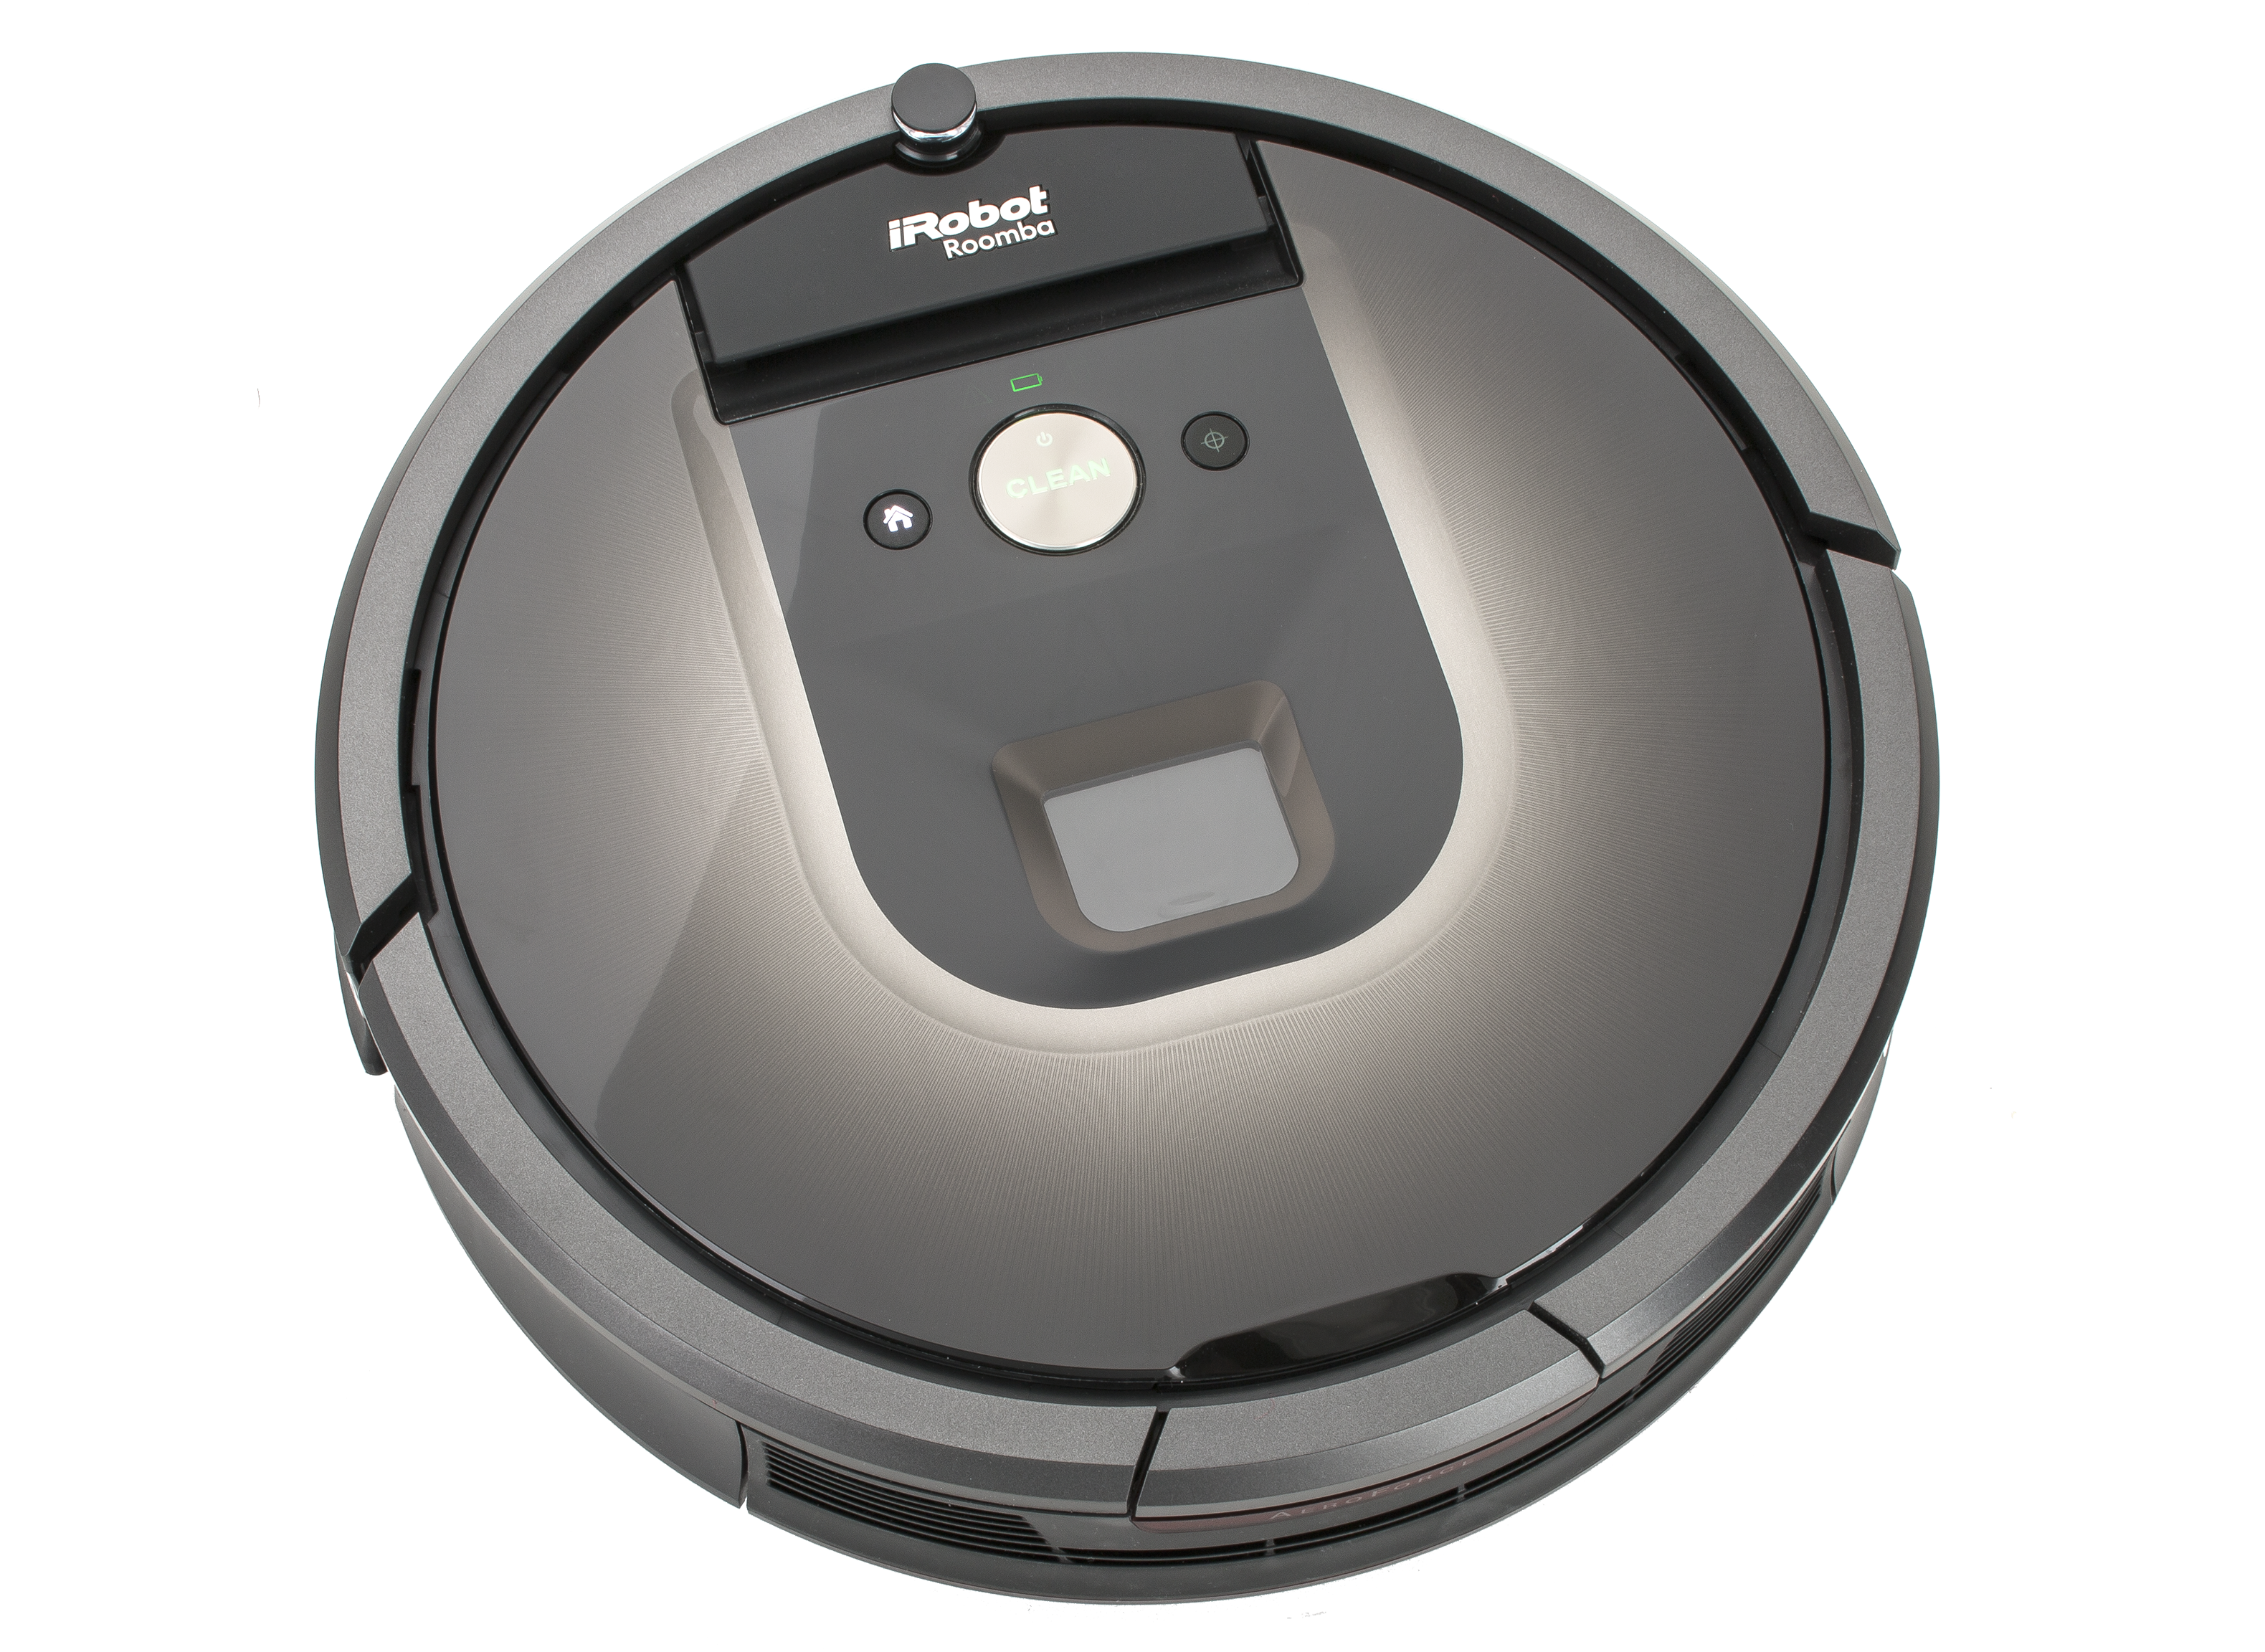 生活家電 掃除機 iRobot Roomba 980 Vacuum Cleaner Review - Consumer Reports